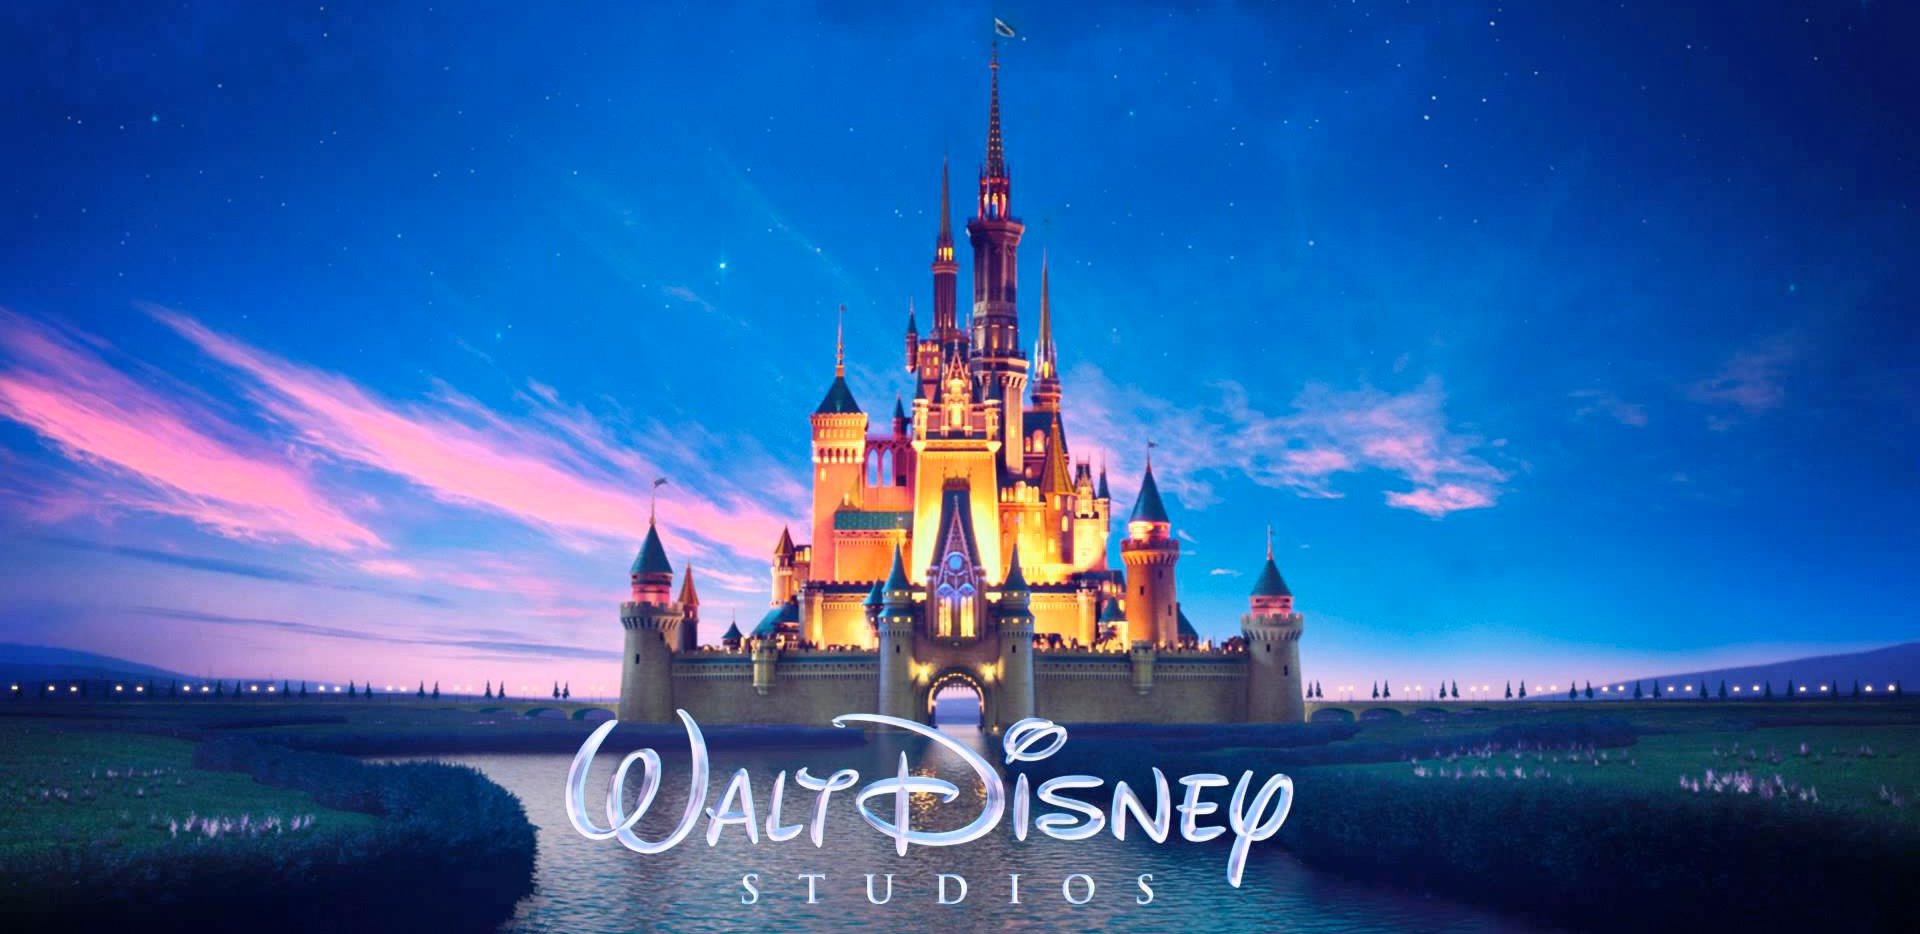 Disney já perdeu 1 bilhão de dólares em streamings graças à Hulu